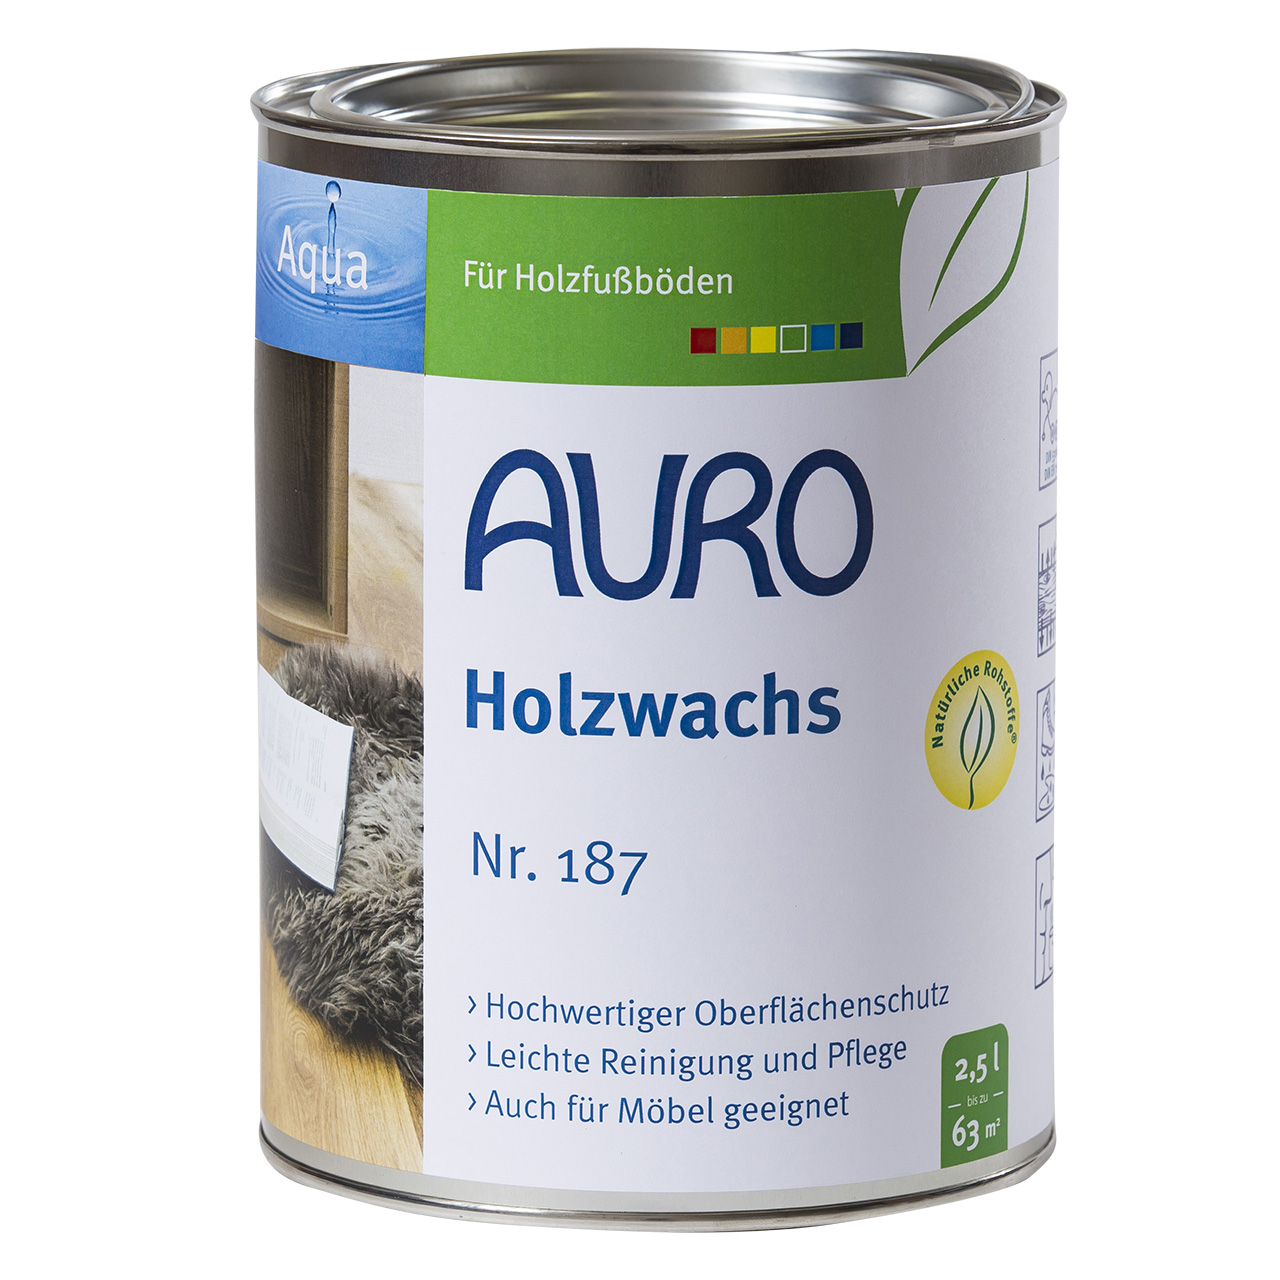 Auro Holzwachs Nr. 187, 2,5L